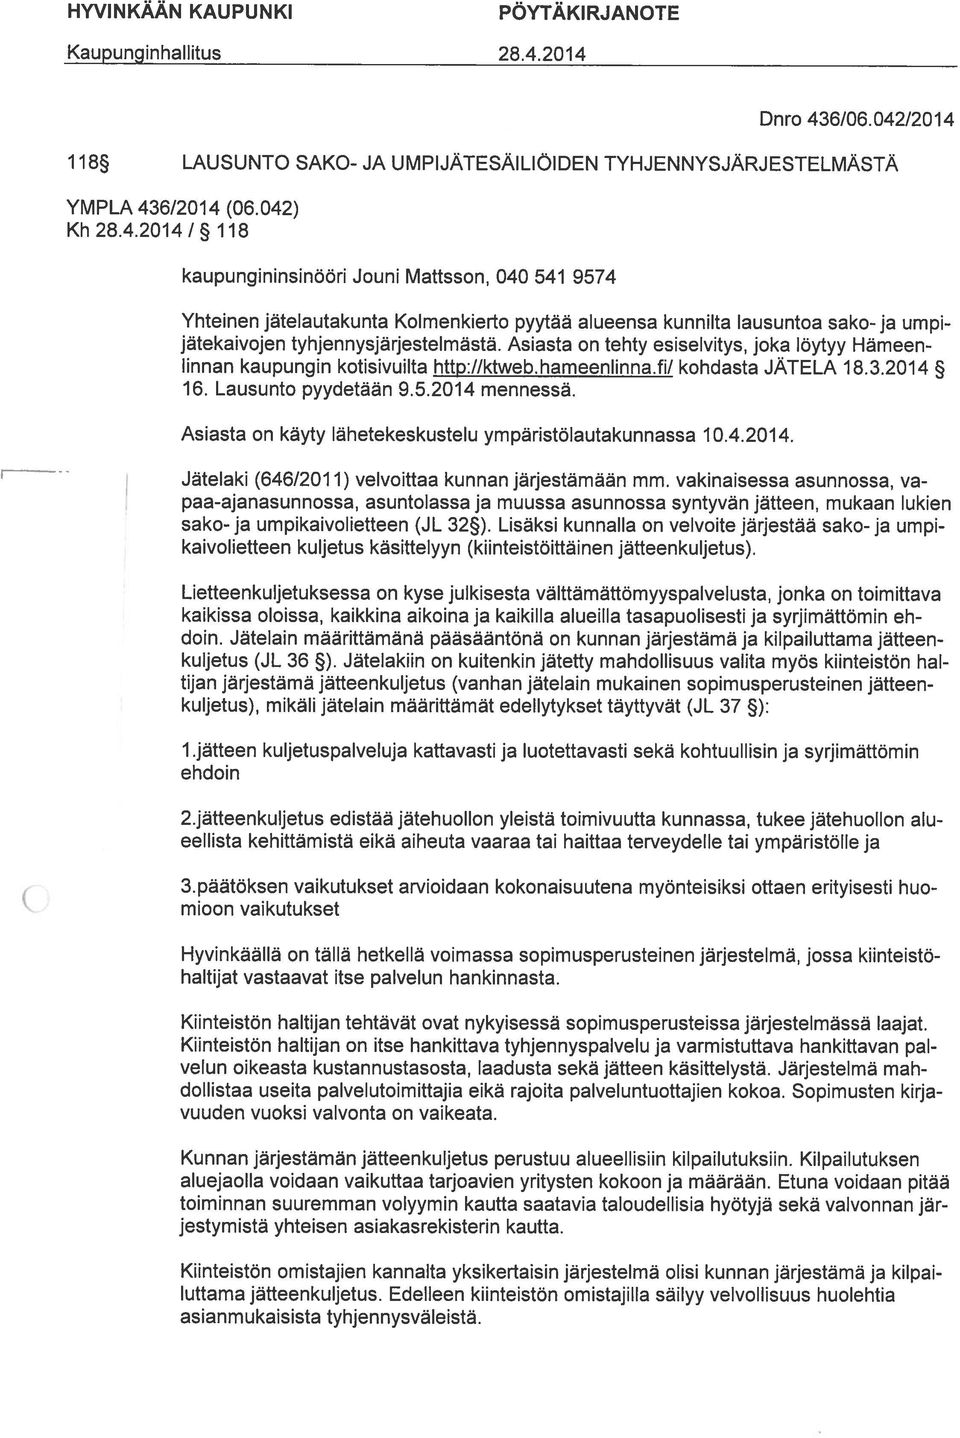 Asiasta on tehty esiselvitys, joka löytyy Hämeen linnan kaupungin kotisivuilta http://ktwebhameenlinna.fi/ kohdasta JÄTELA 18.3.2014 16. Lausunto pyydetään 9.5.2014 mennessä.